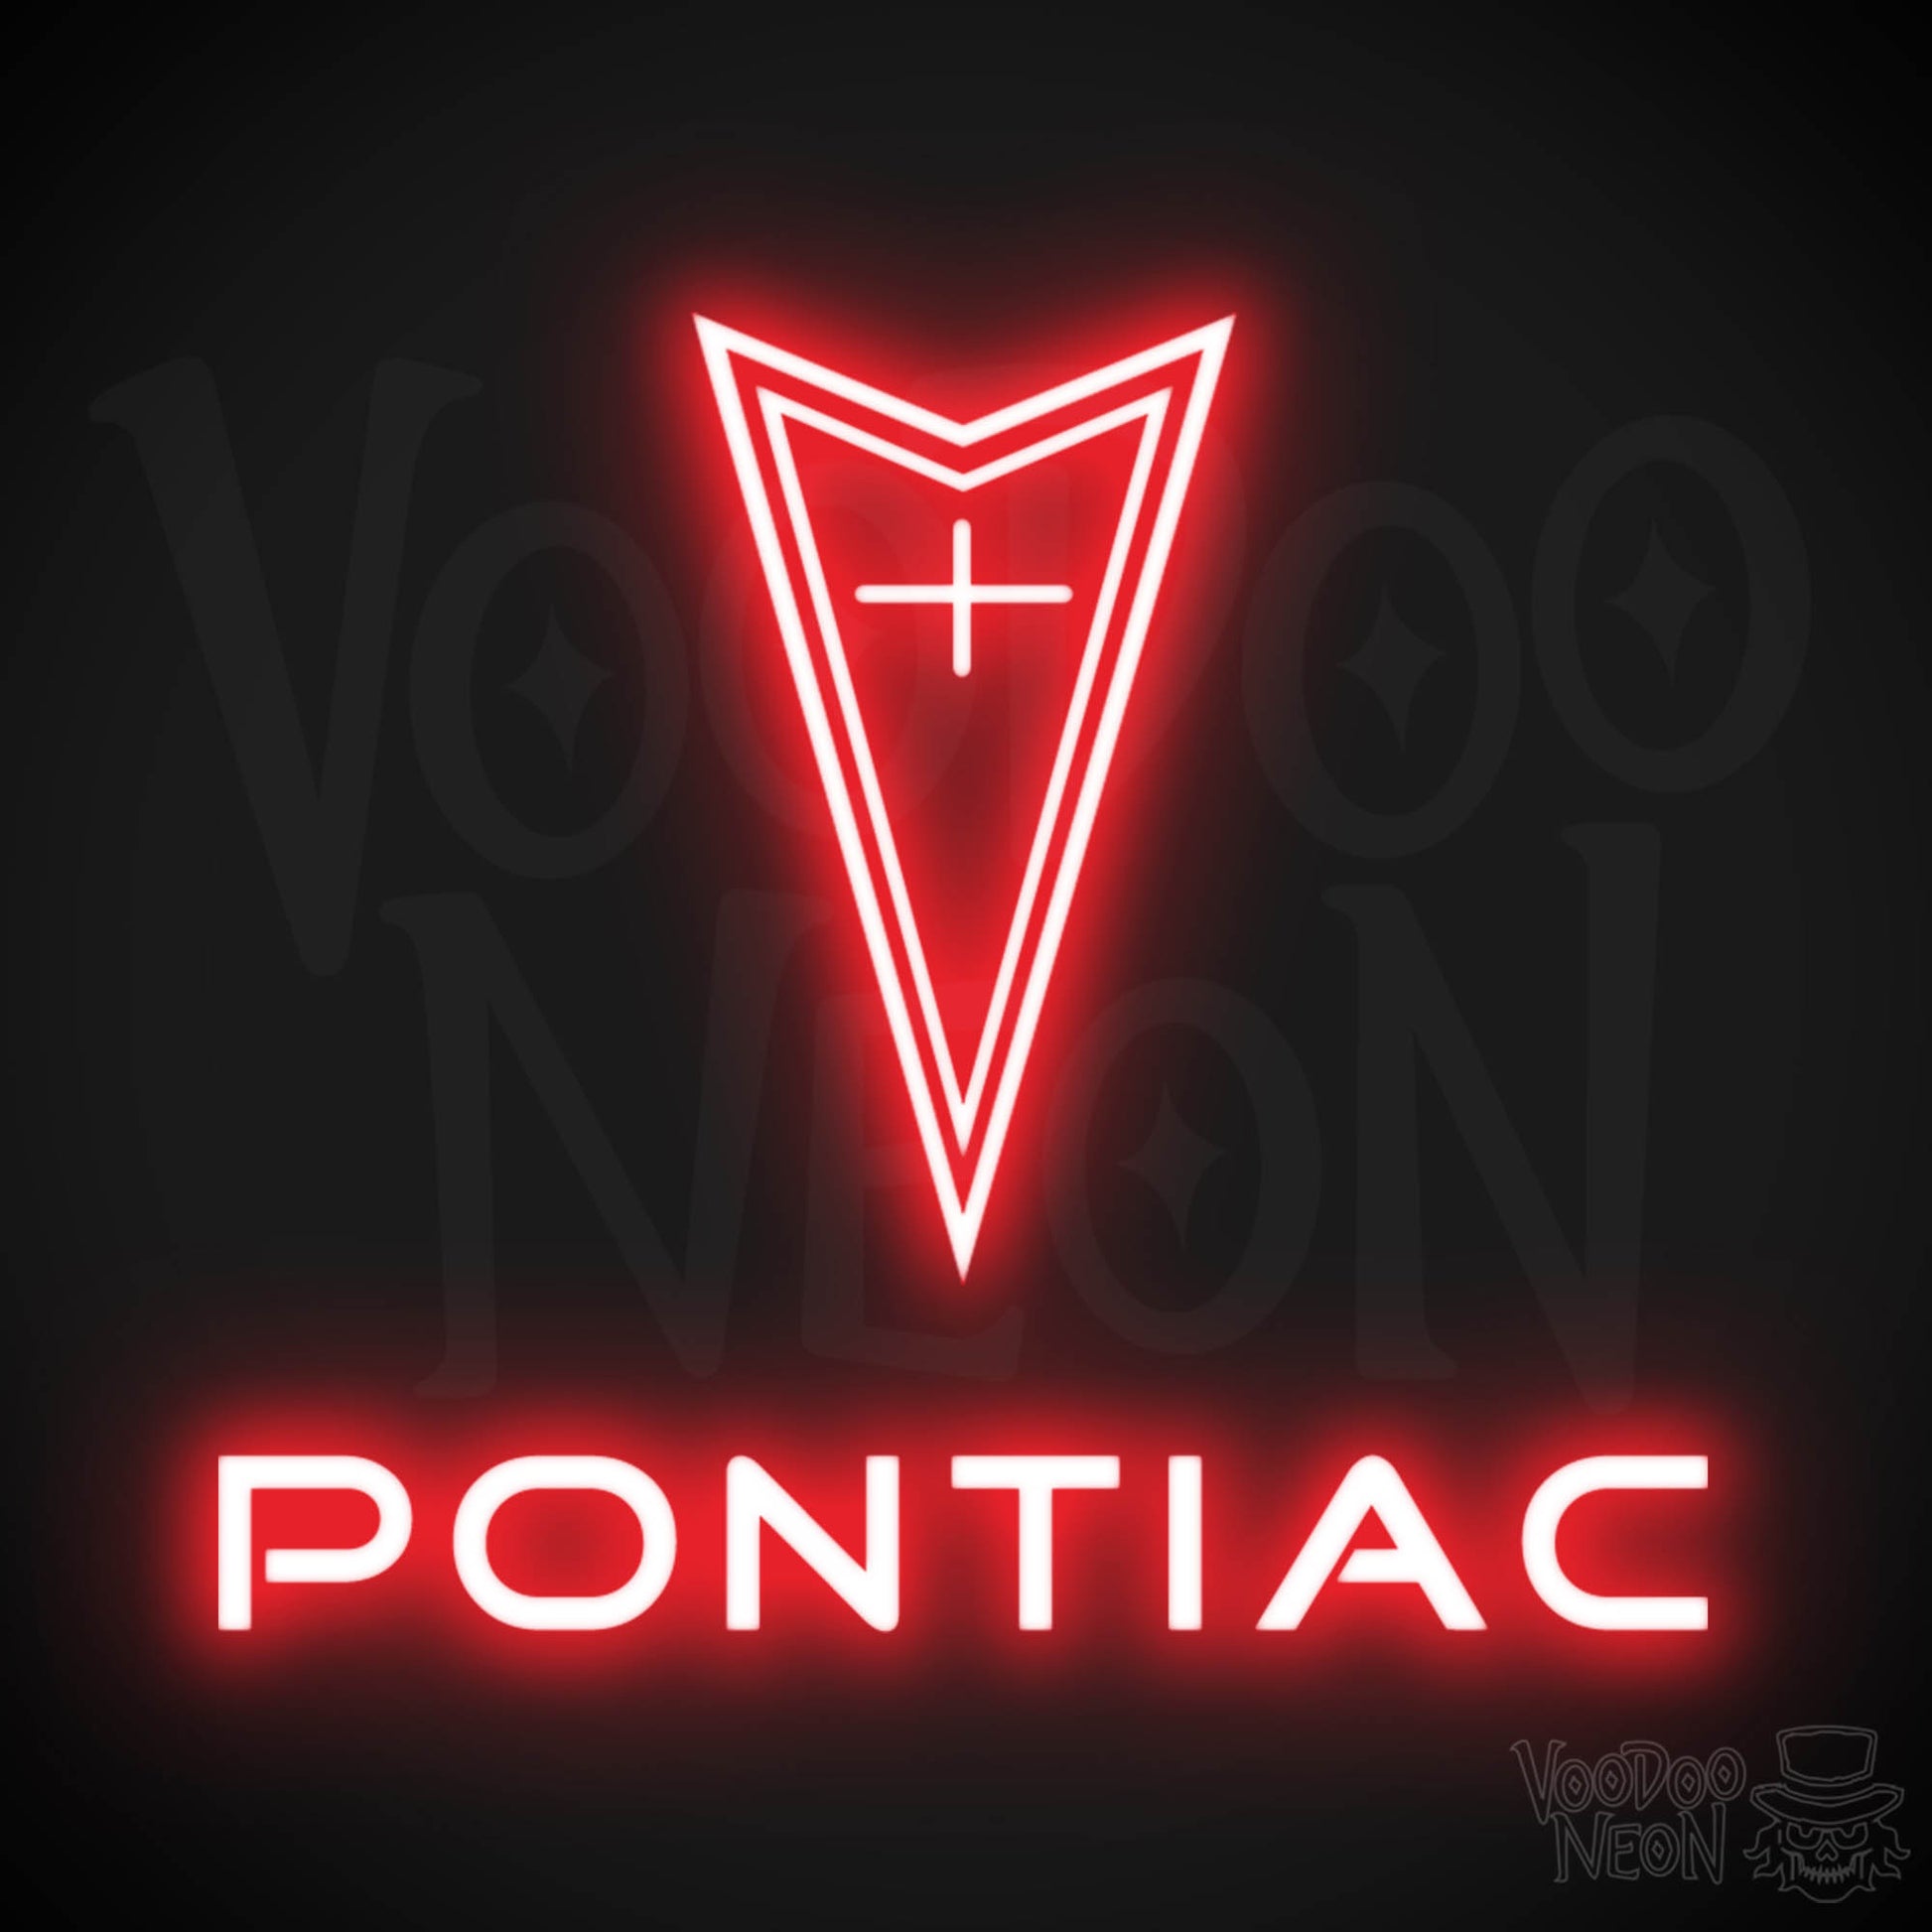 Pontiac Neon Sign - Pontiac Sign - Pontiac Decor - Wall Art - Color Red